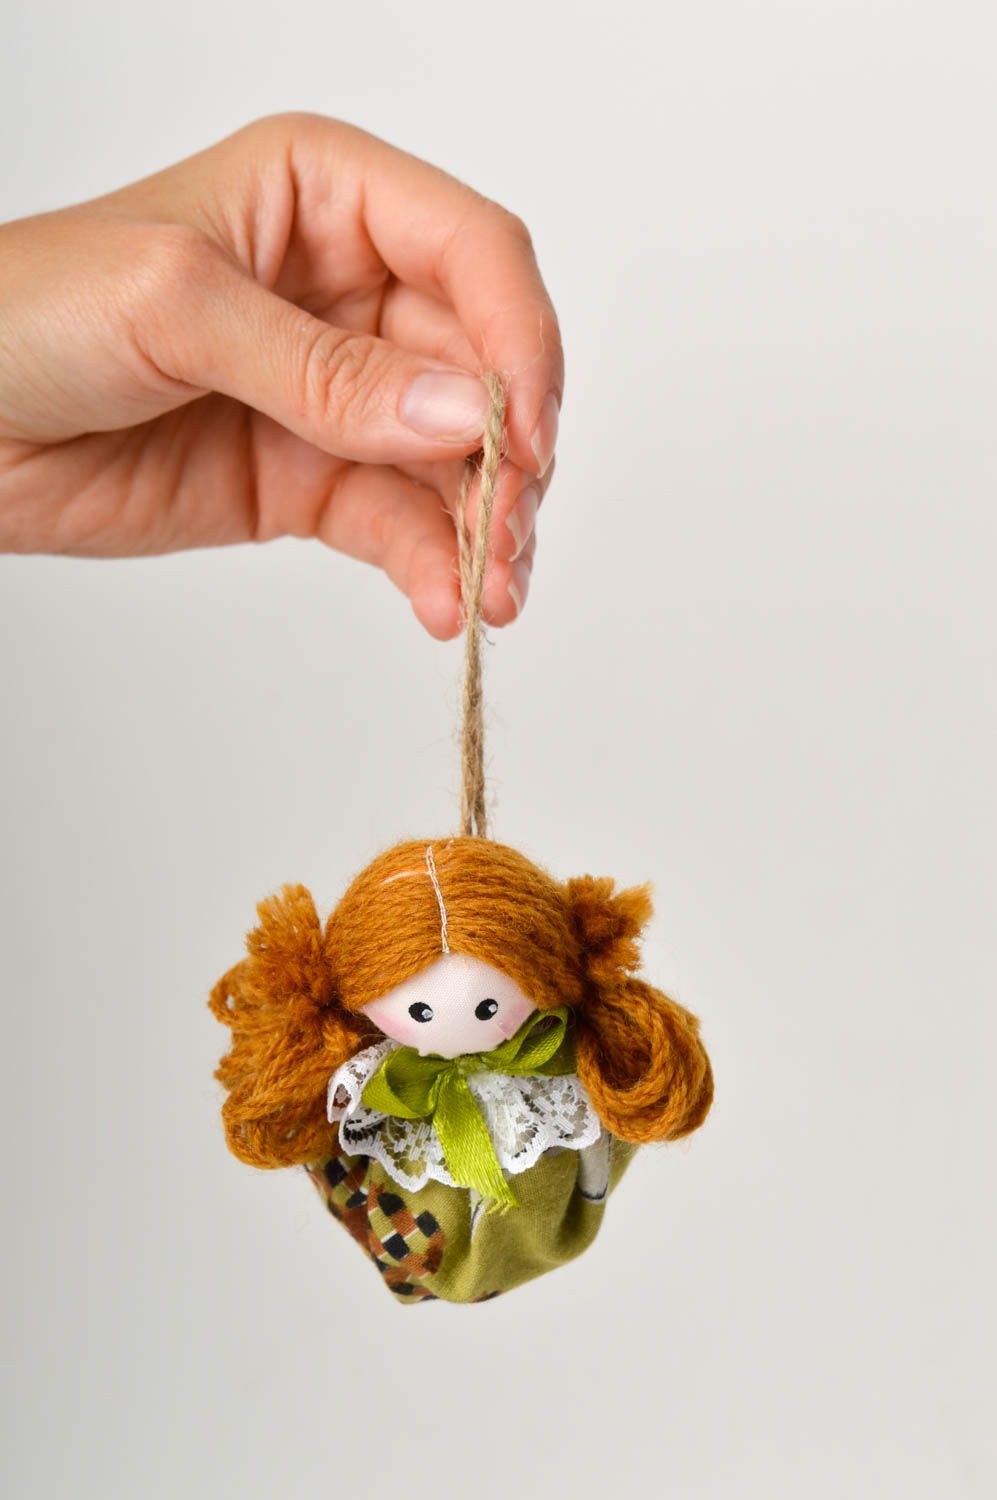 Muñeca de trapo hecha a mano juguete decorativo de tela decoración de hogar foto 2